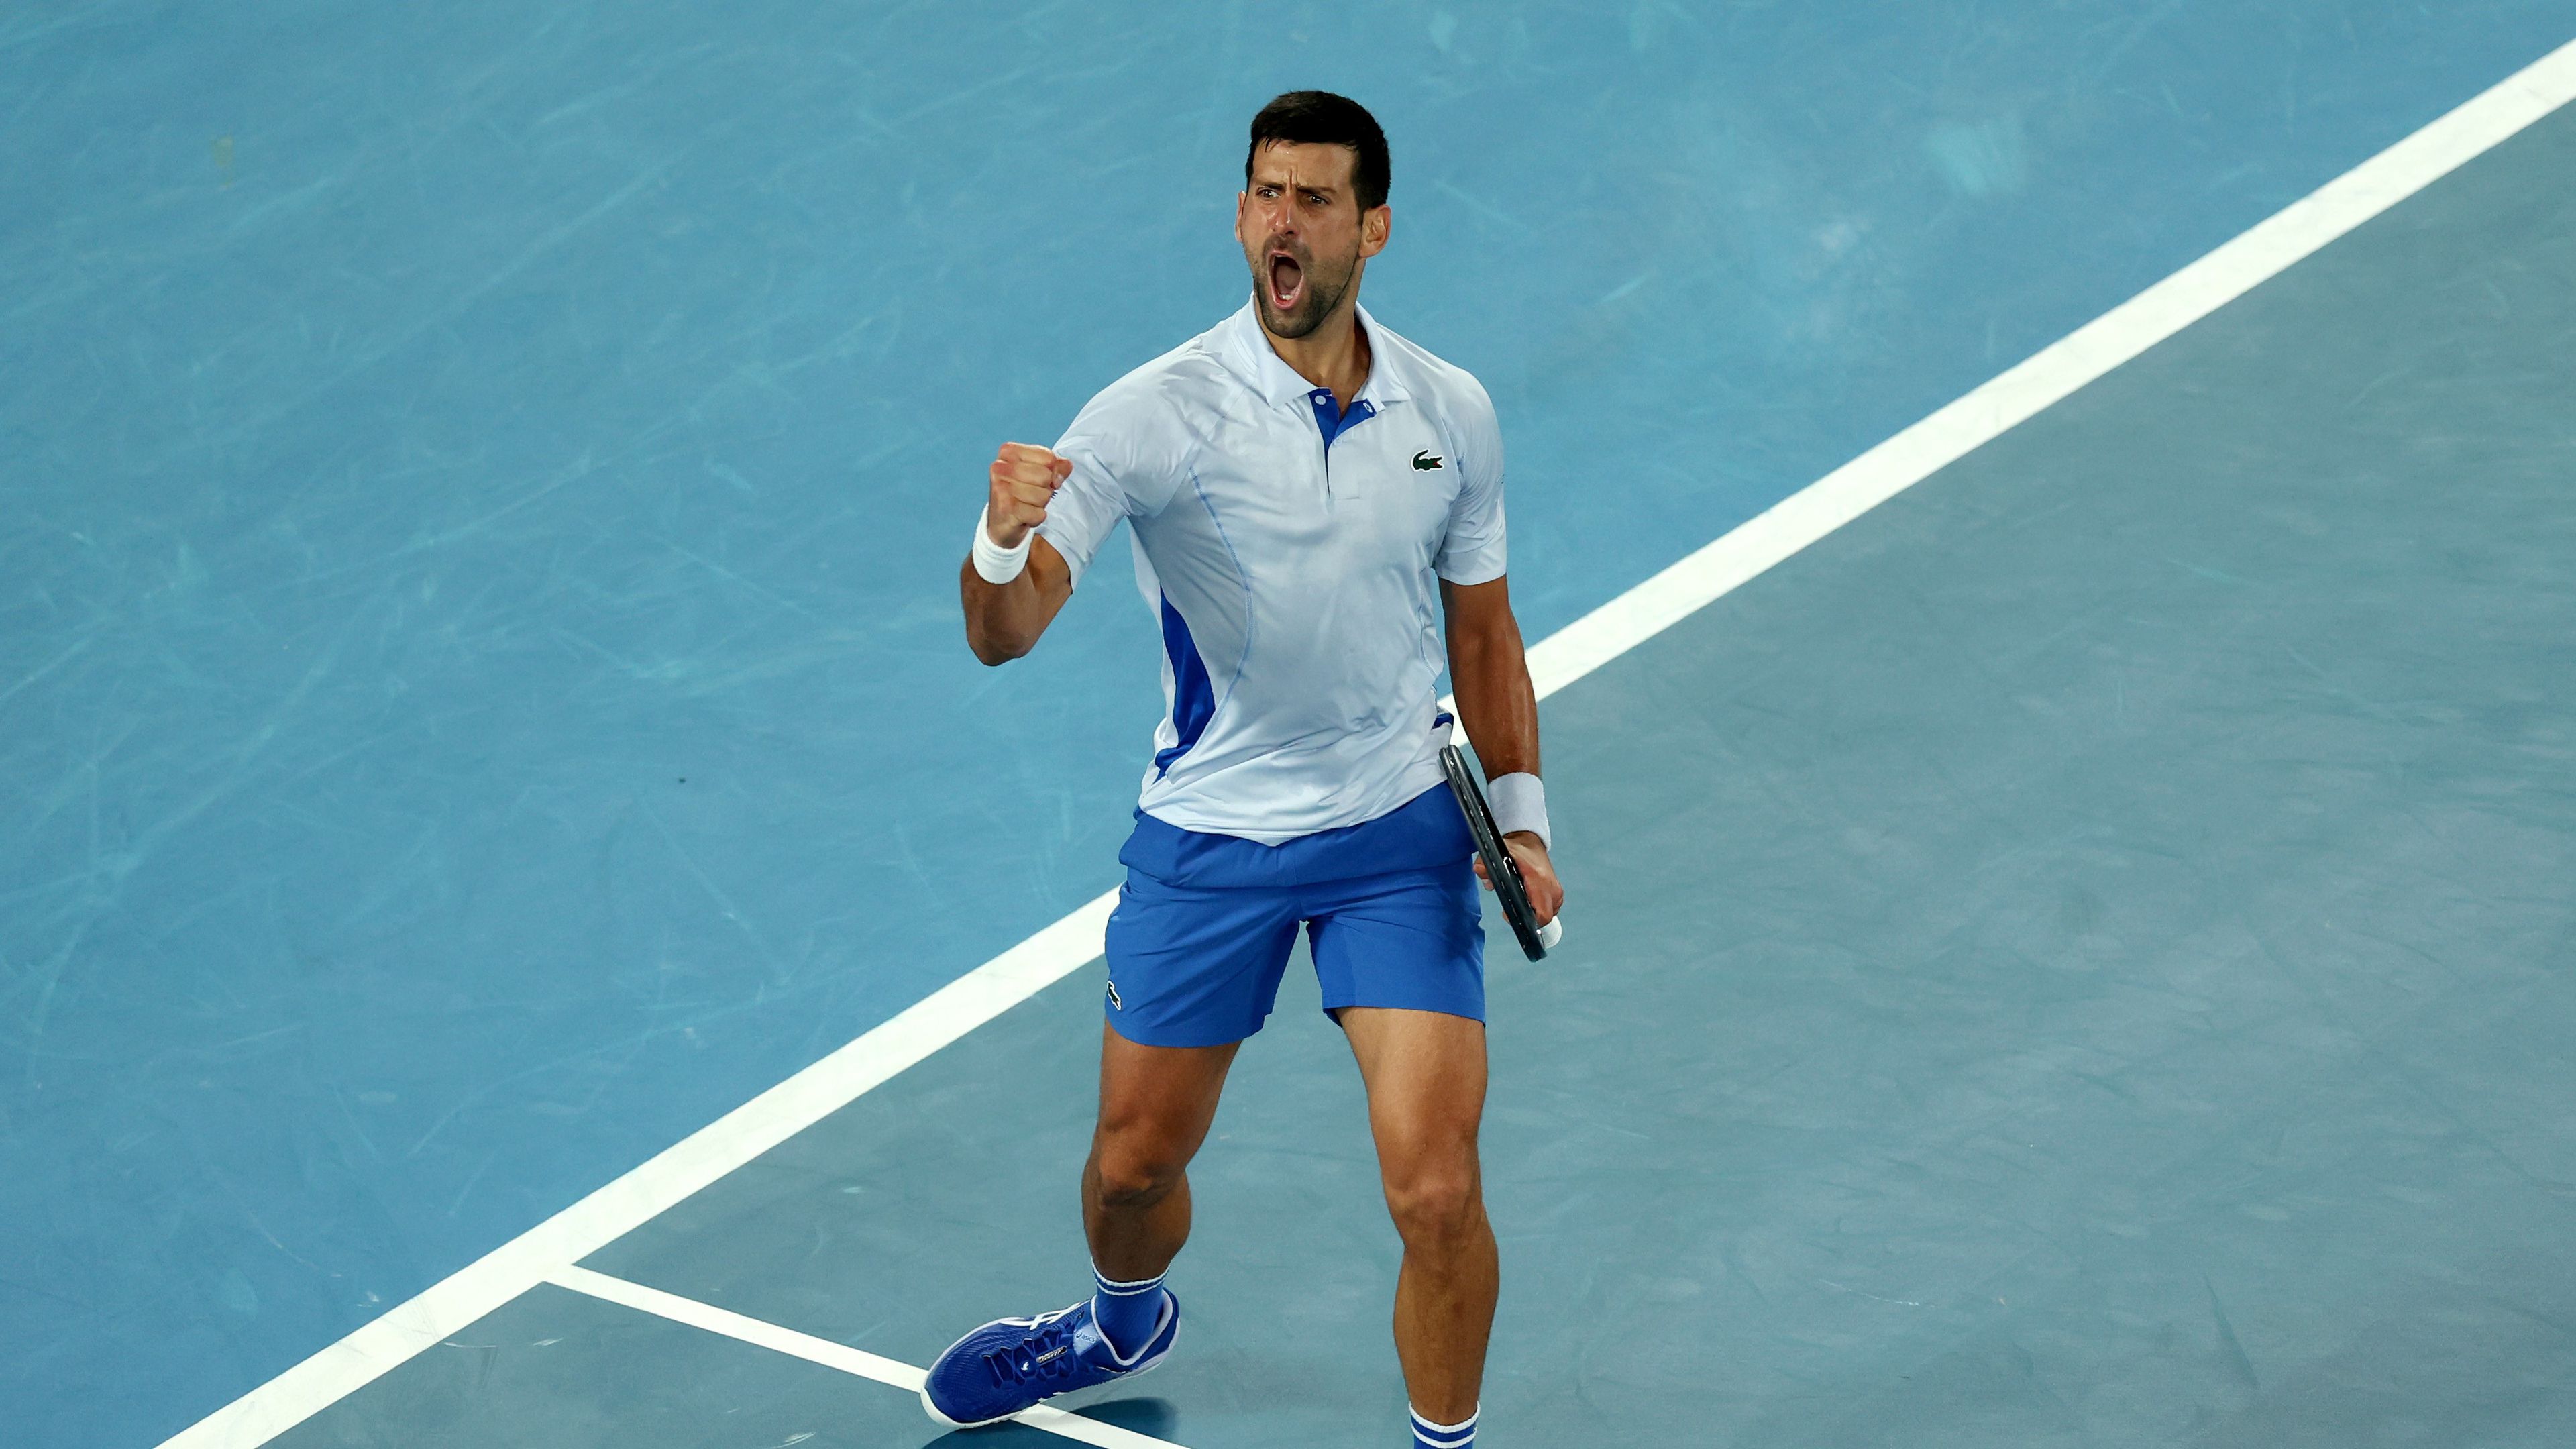 Megizzasztották Djokovicsot, de sikerrel vette az Australian Open első meccsét